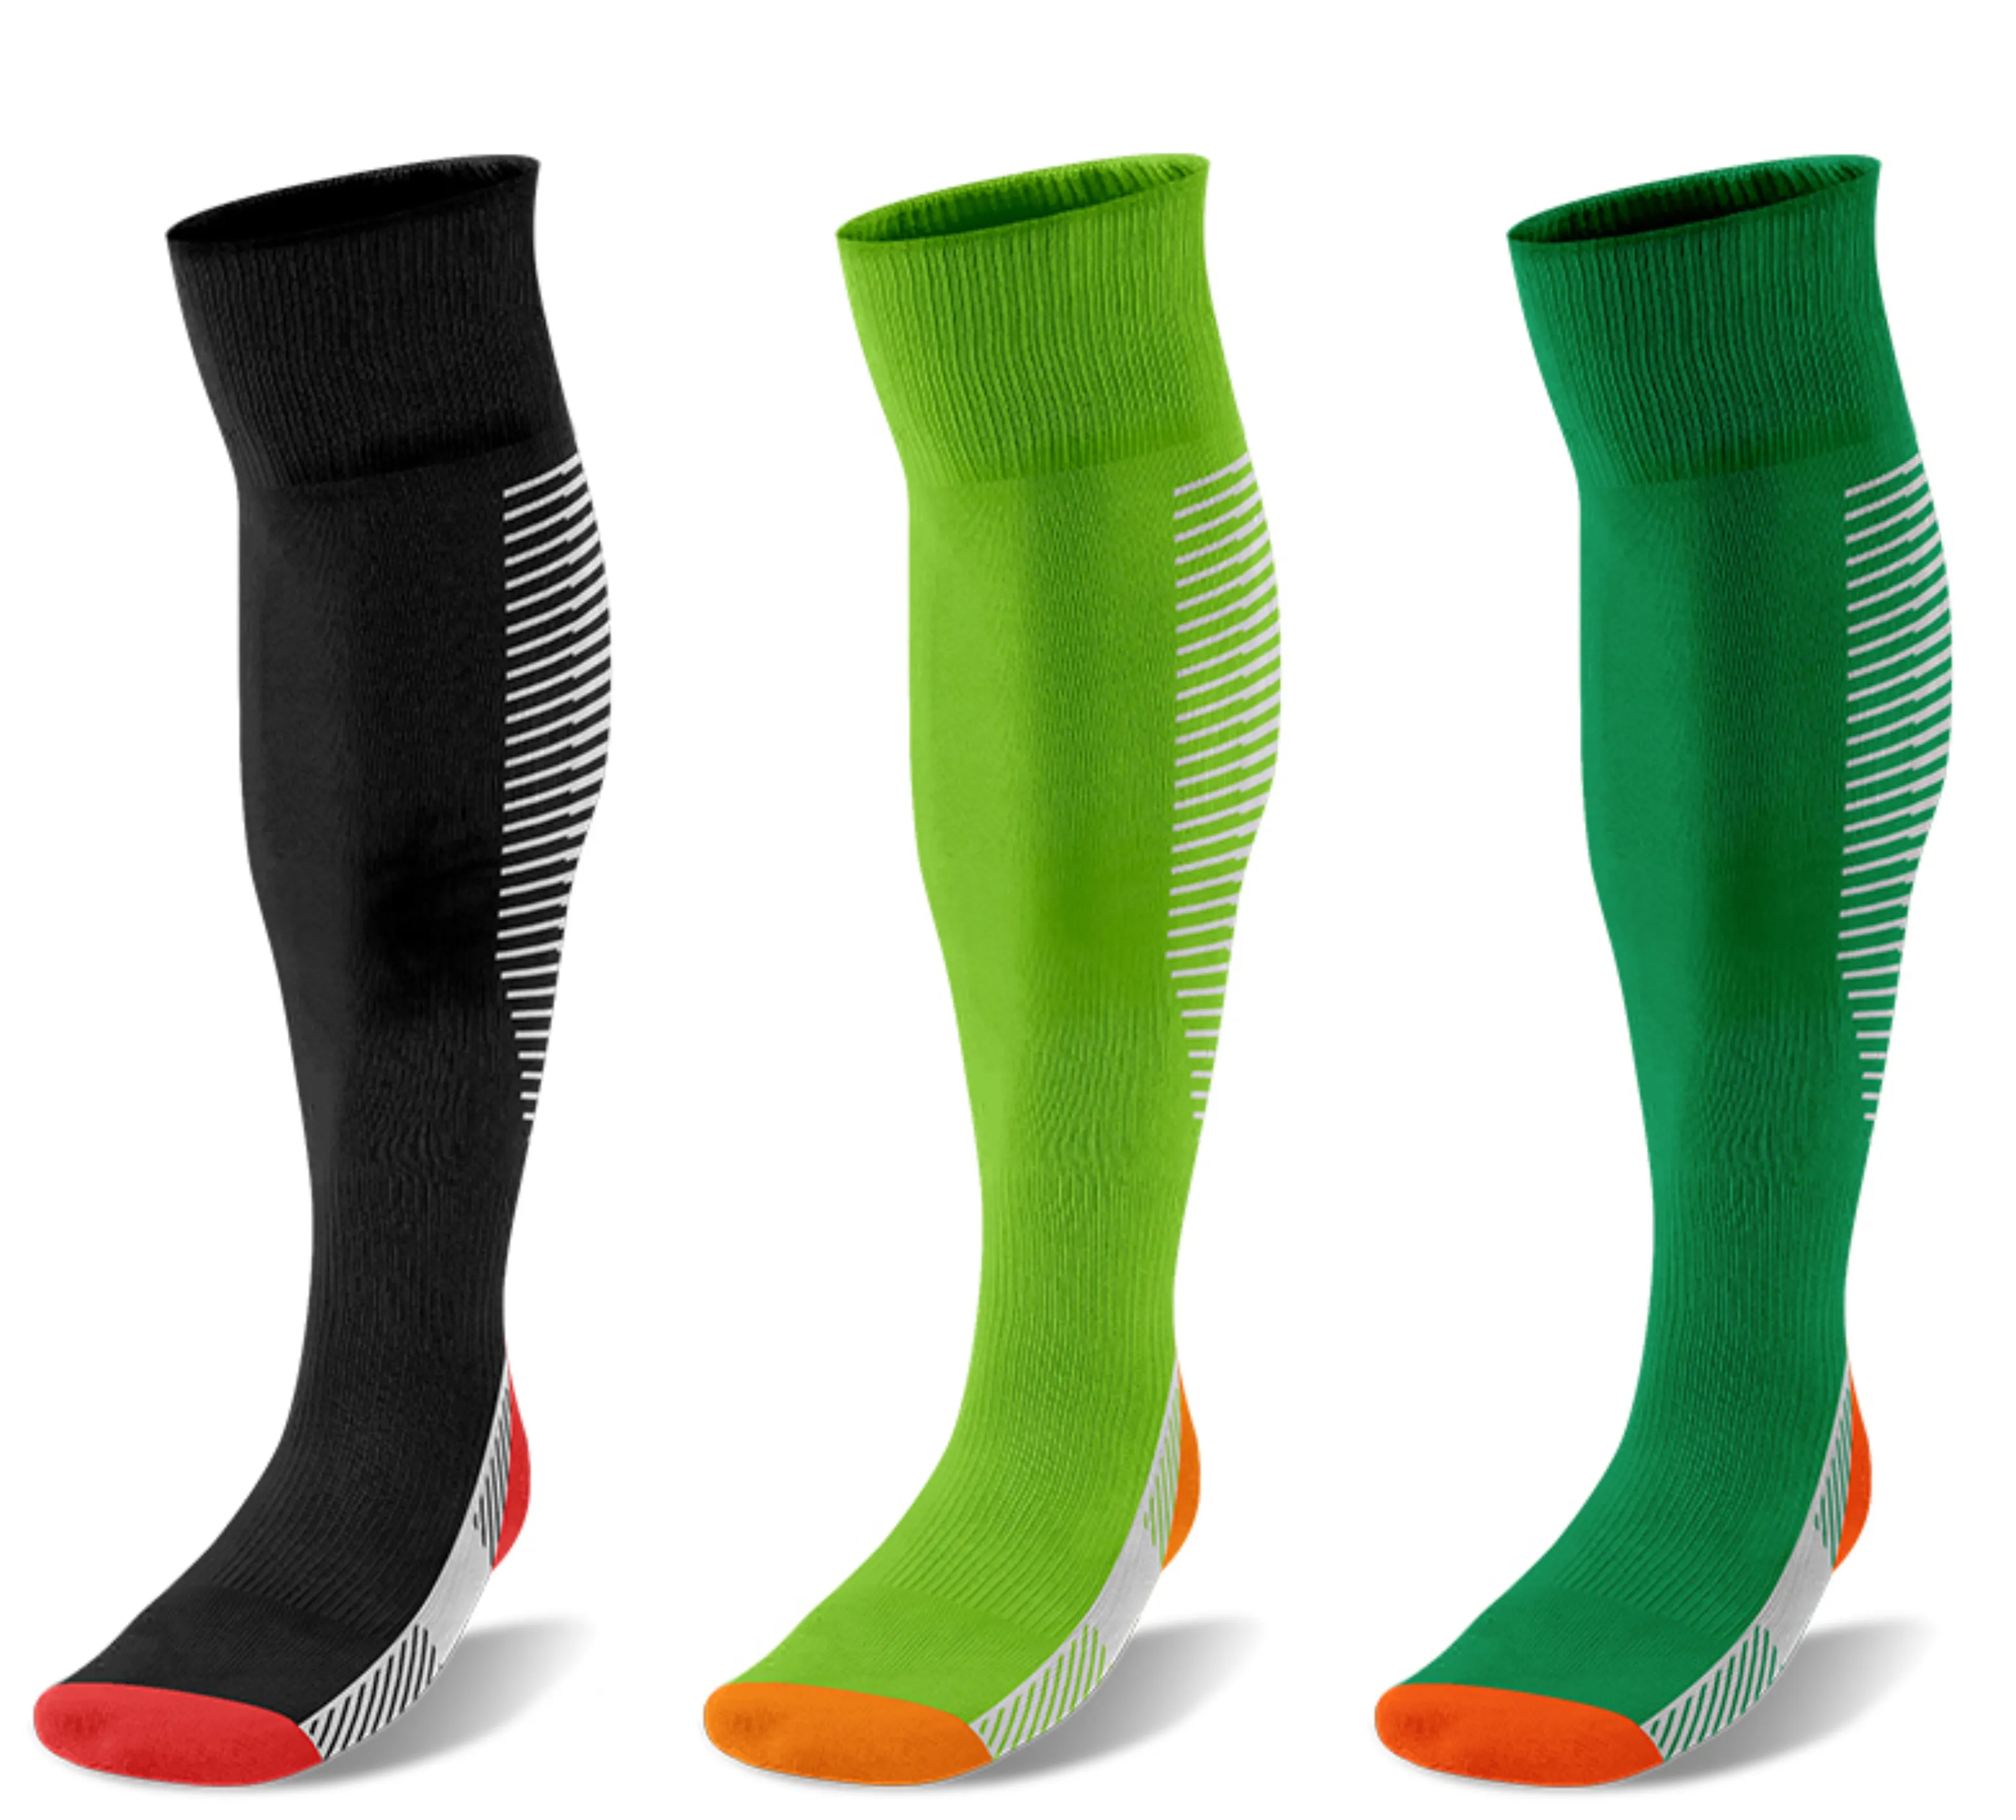 Gama completa de calcetines de fútbol de alta calidad Calcetines de fútbol transpirables que absorben el sudor Calcetines negros, verdes y verdes hierba